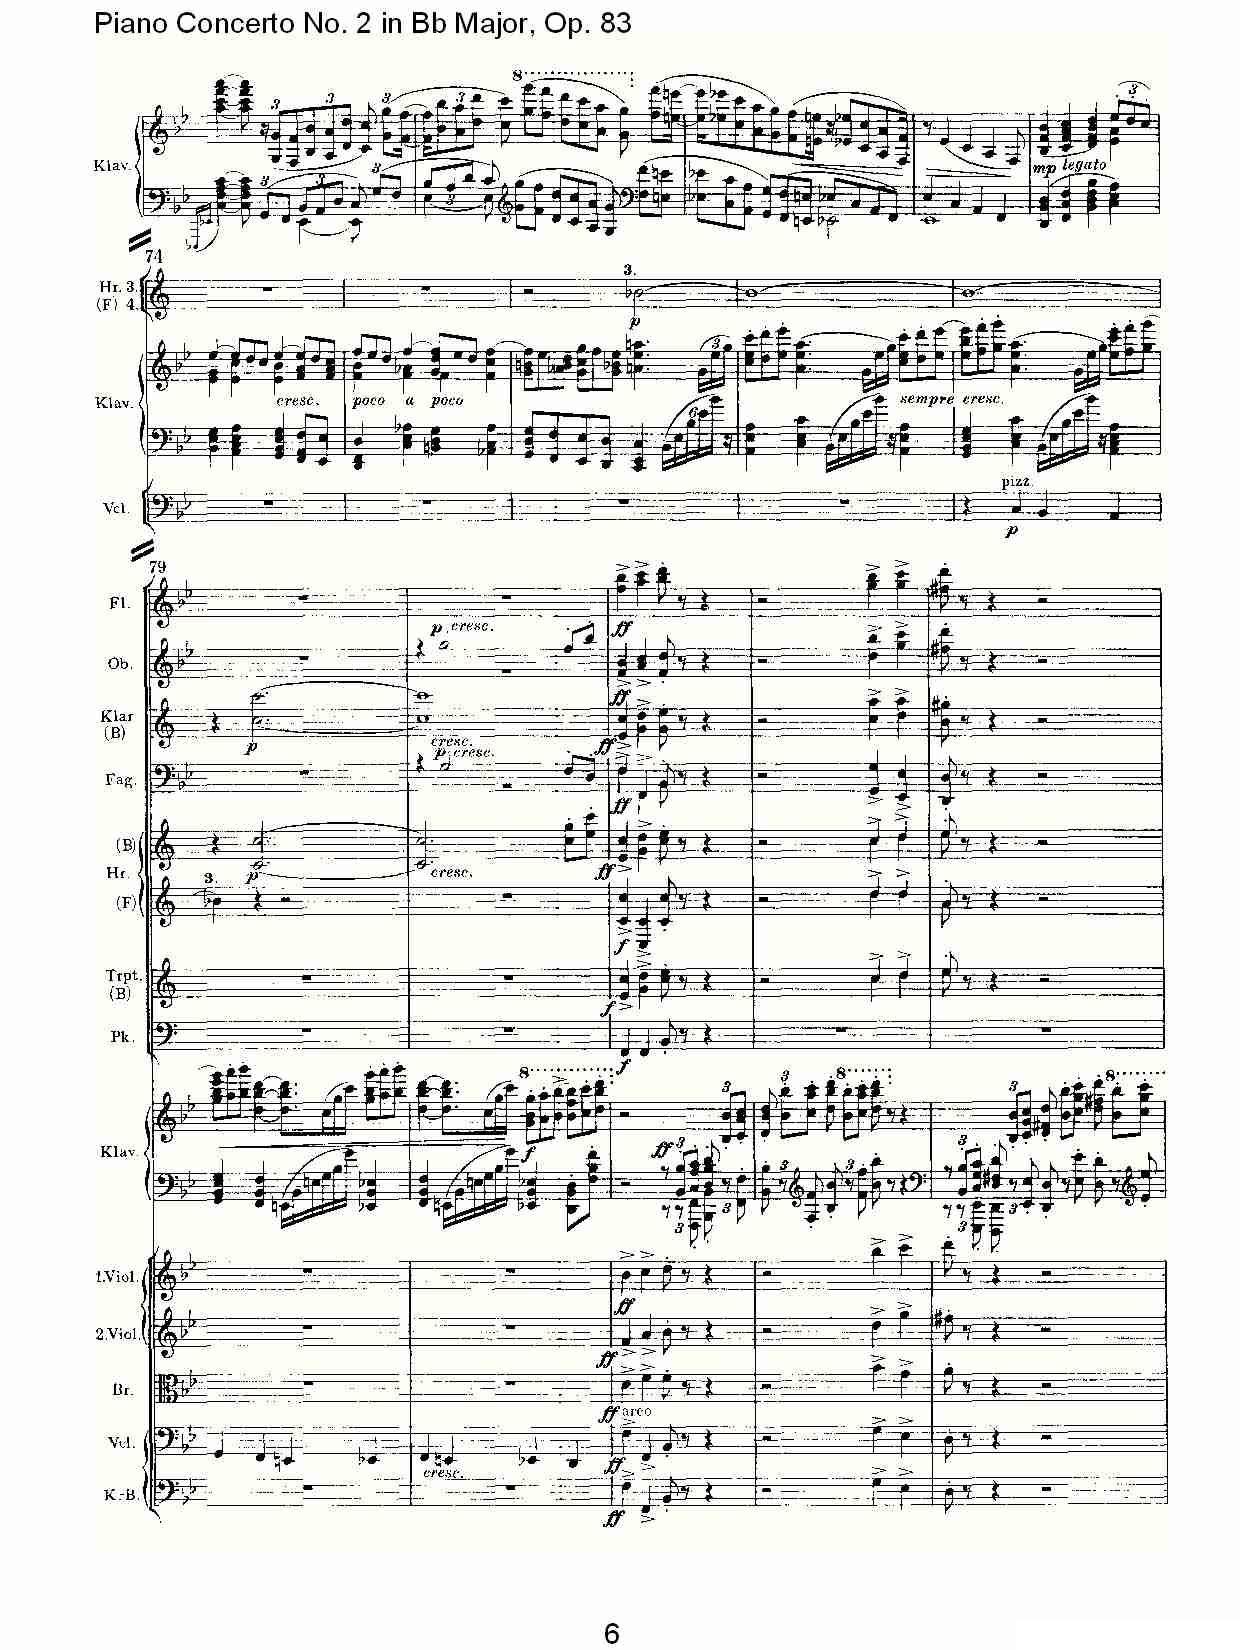 Bb大调钢琴第二协奏曲, Op.83第一乐章（一）钢琴曲谱（图6）